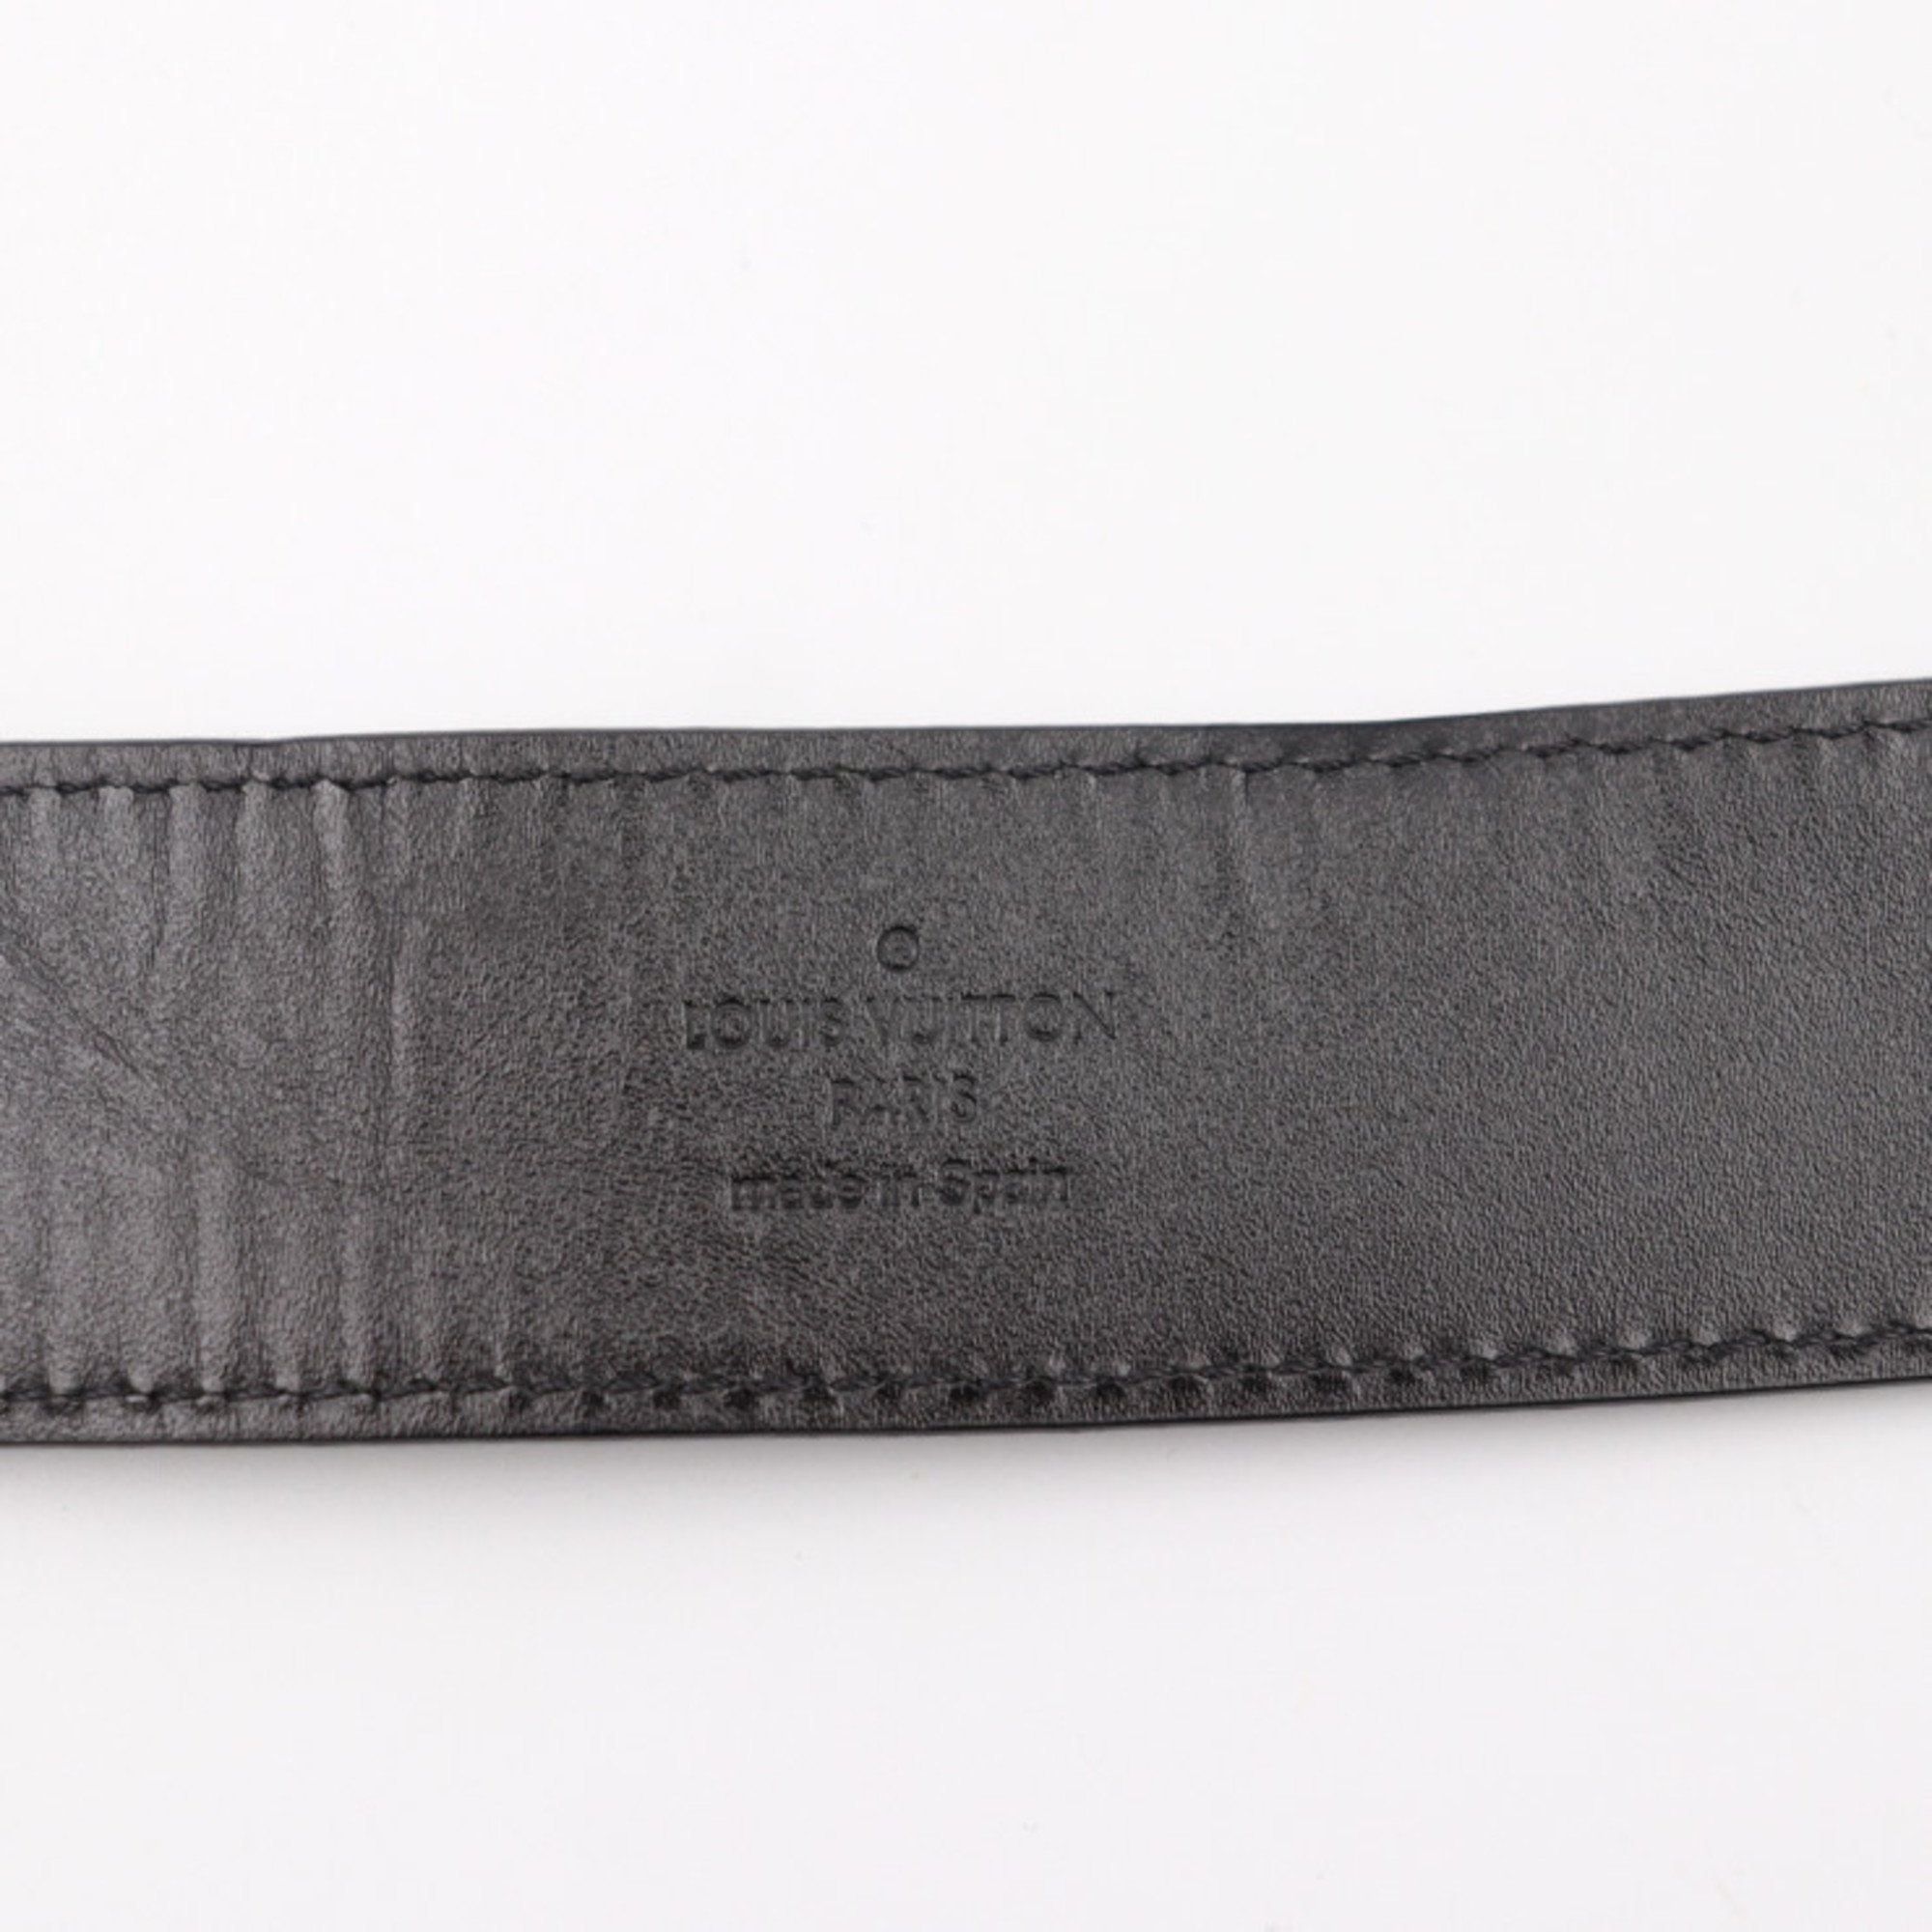 LOUIS VUITTON Louis Vuitton Sun Tulle Detroit belt M9707T Notation size 95/38 Damier Infini Onyx Black Silver metal fittings